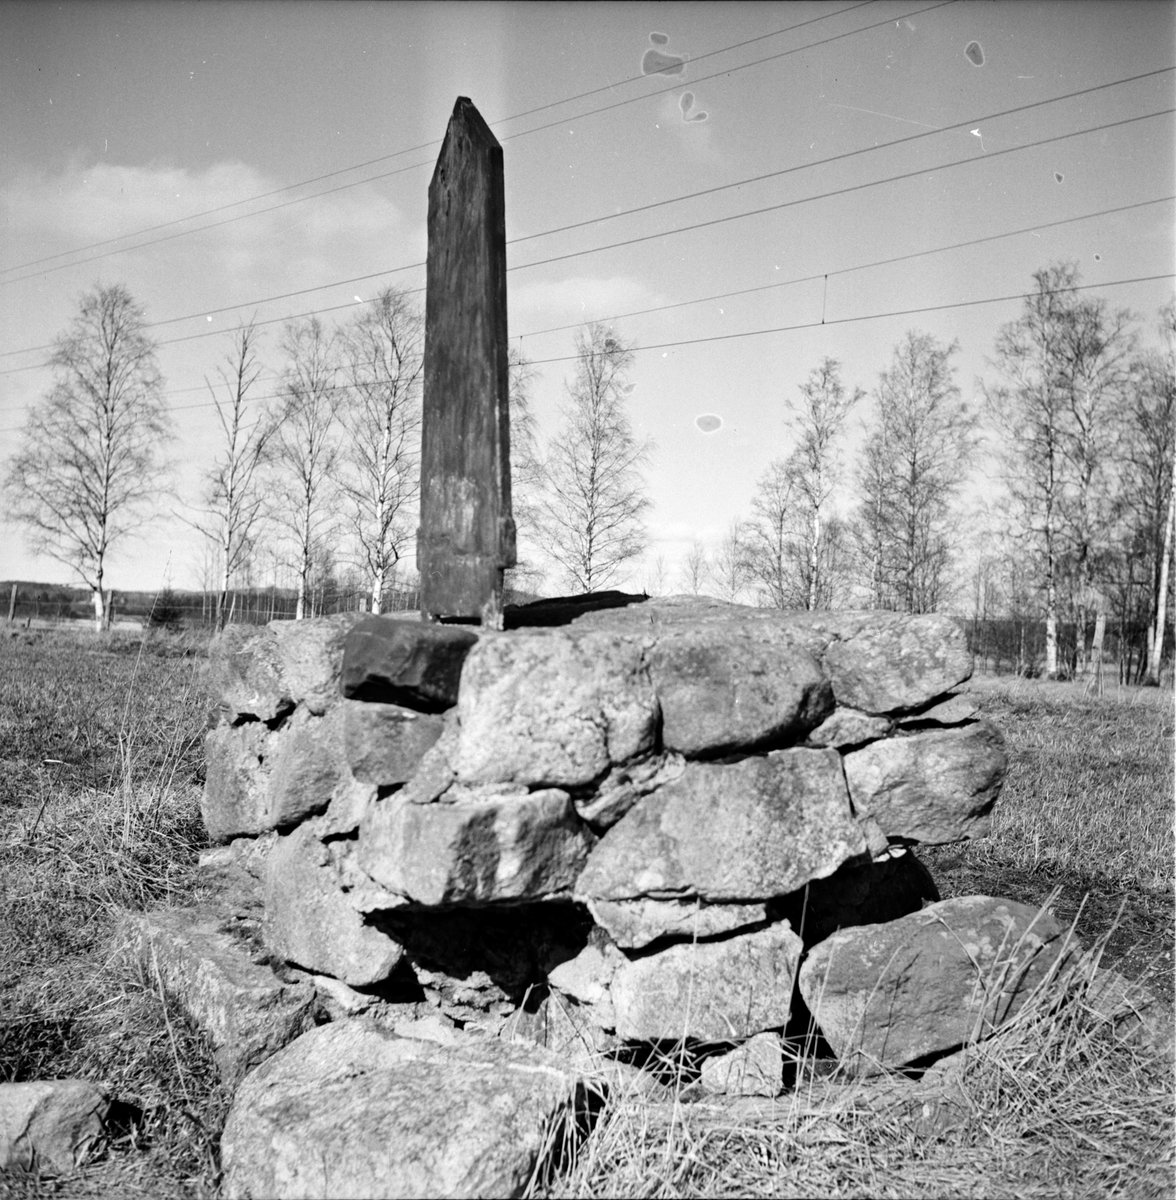 Fjärdingsstolpe i Arbrå, Vallsta,
April 1973